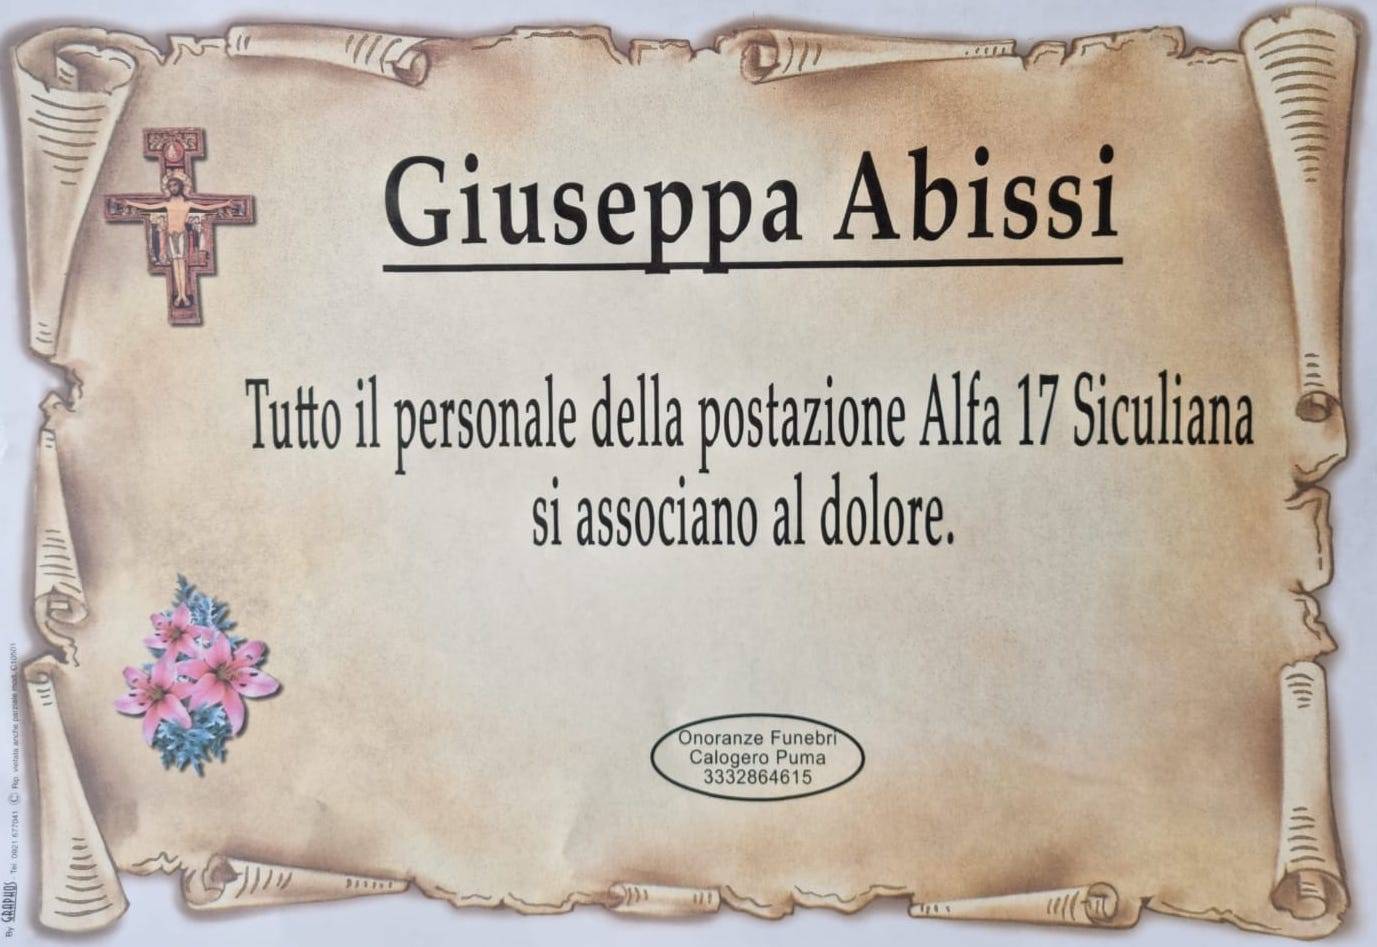 Giuseppa Abissi (P1)